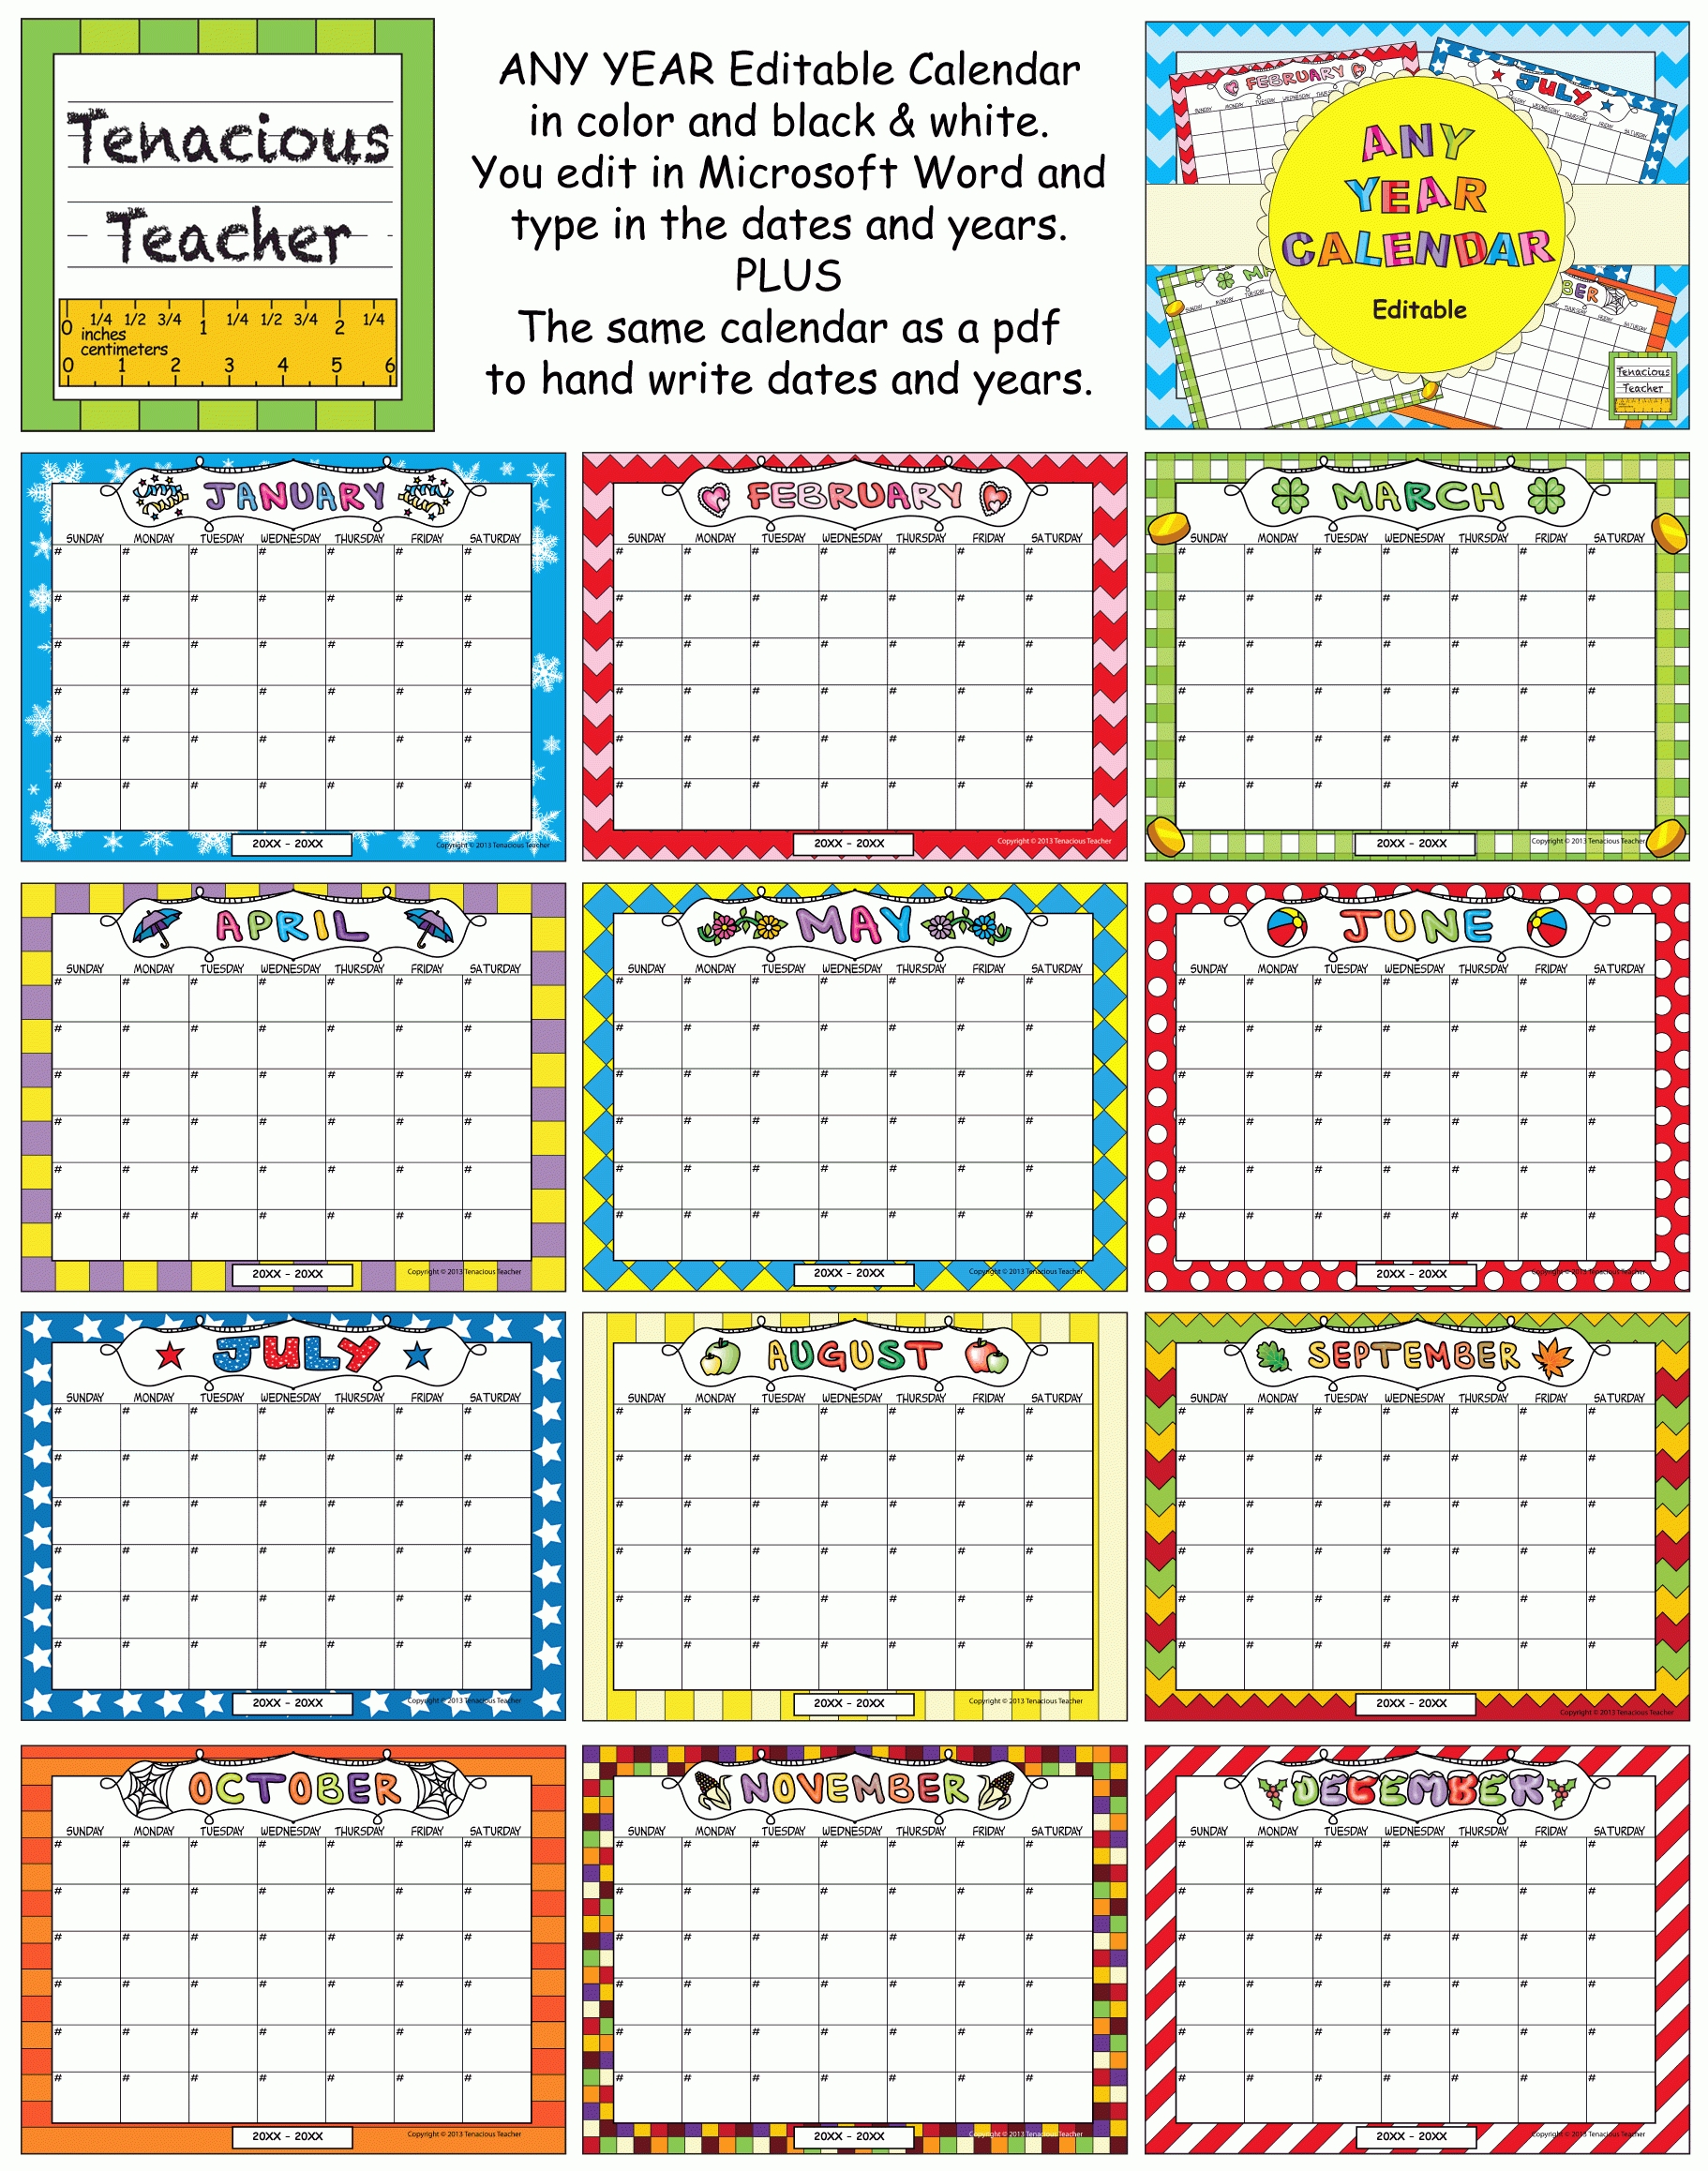 Any Year Editable Calendar | School Activities, Editable